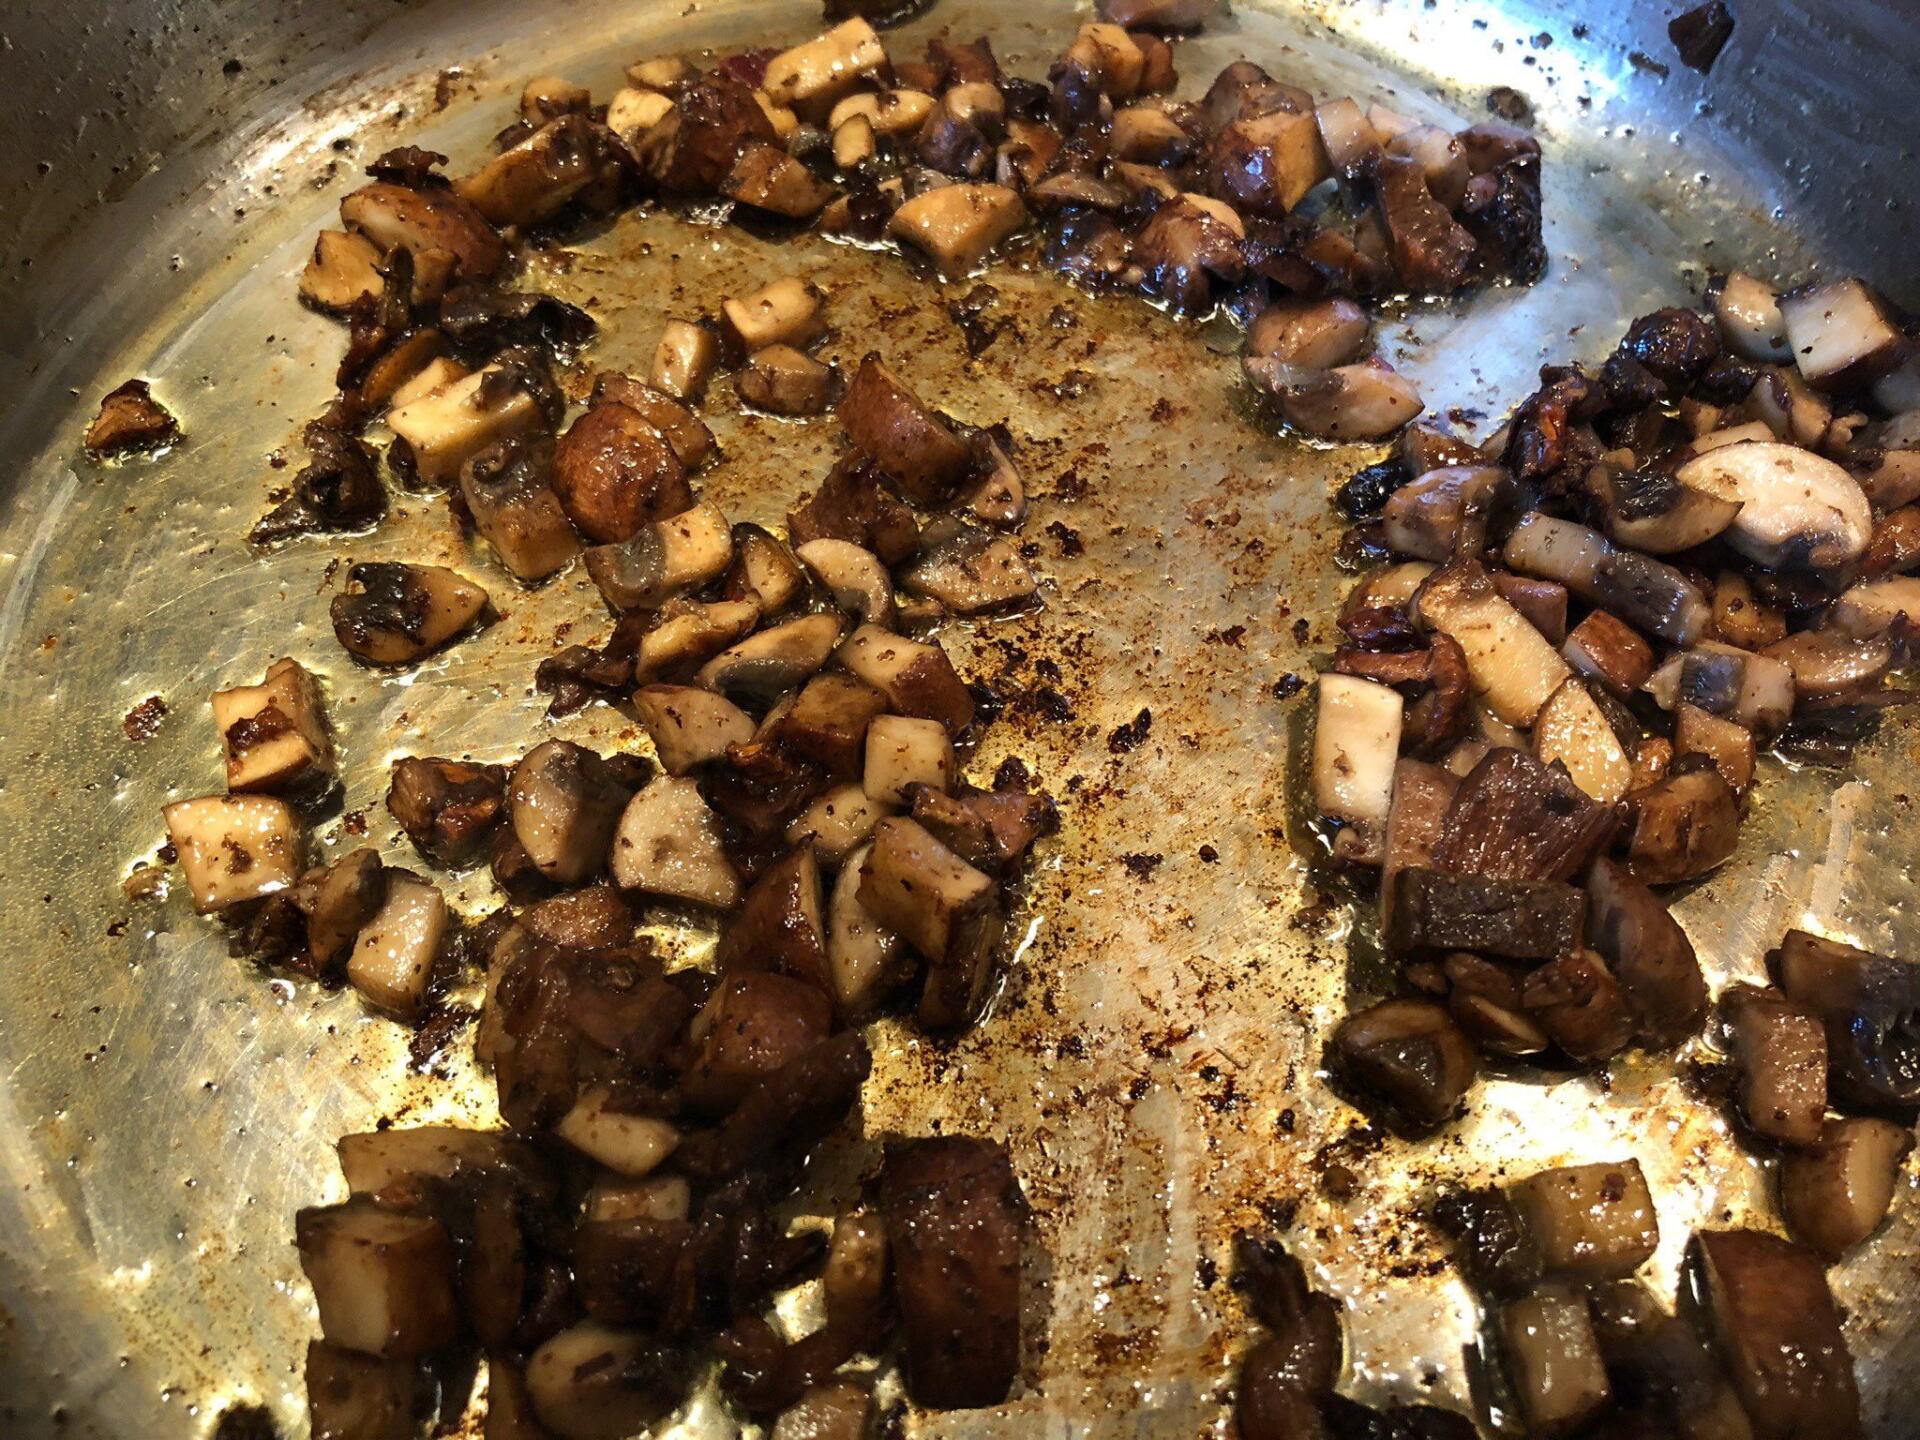 Mushrooms in the pan